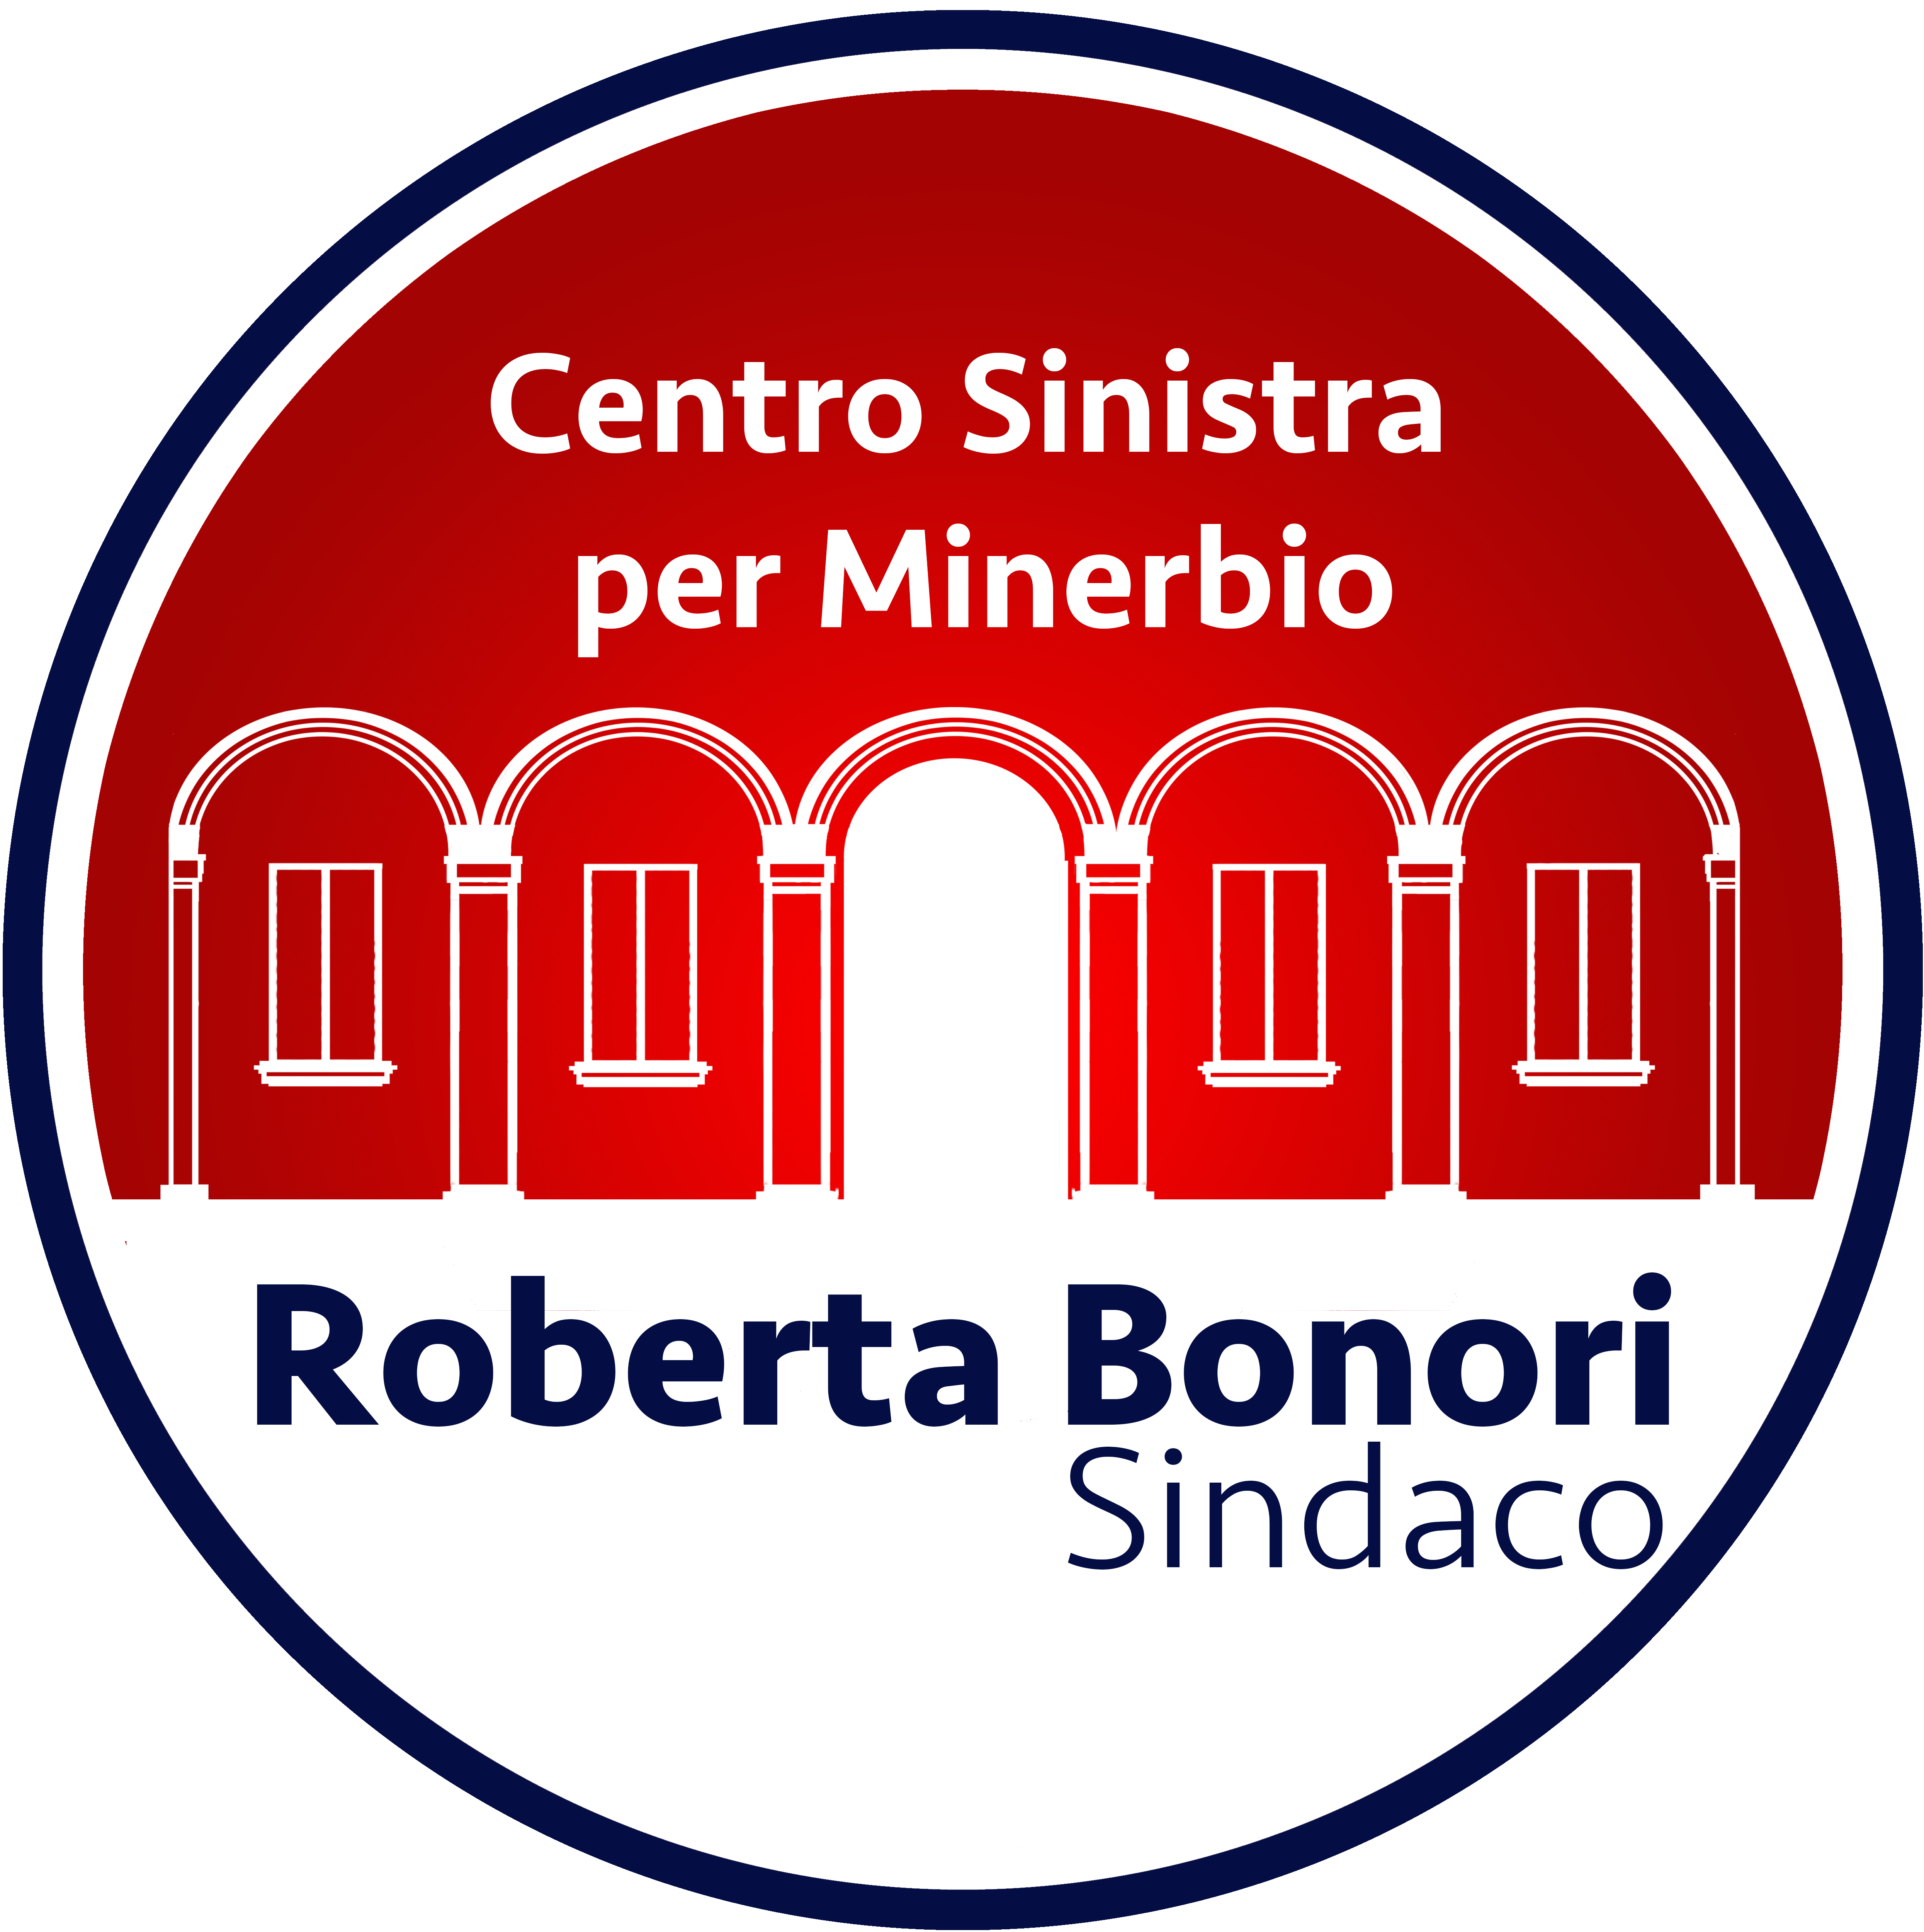 Roberta Bonori Sindaco